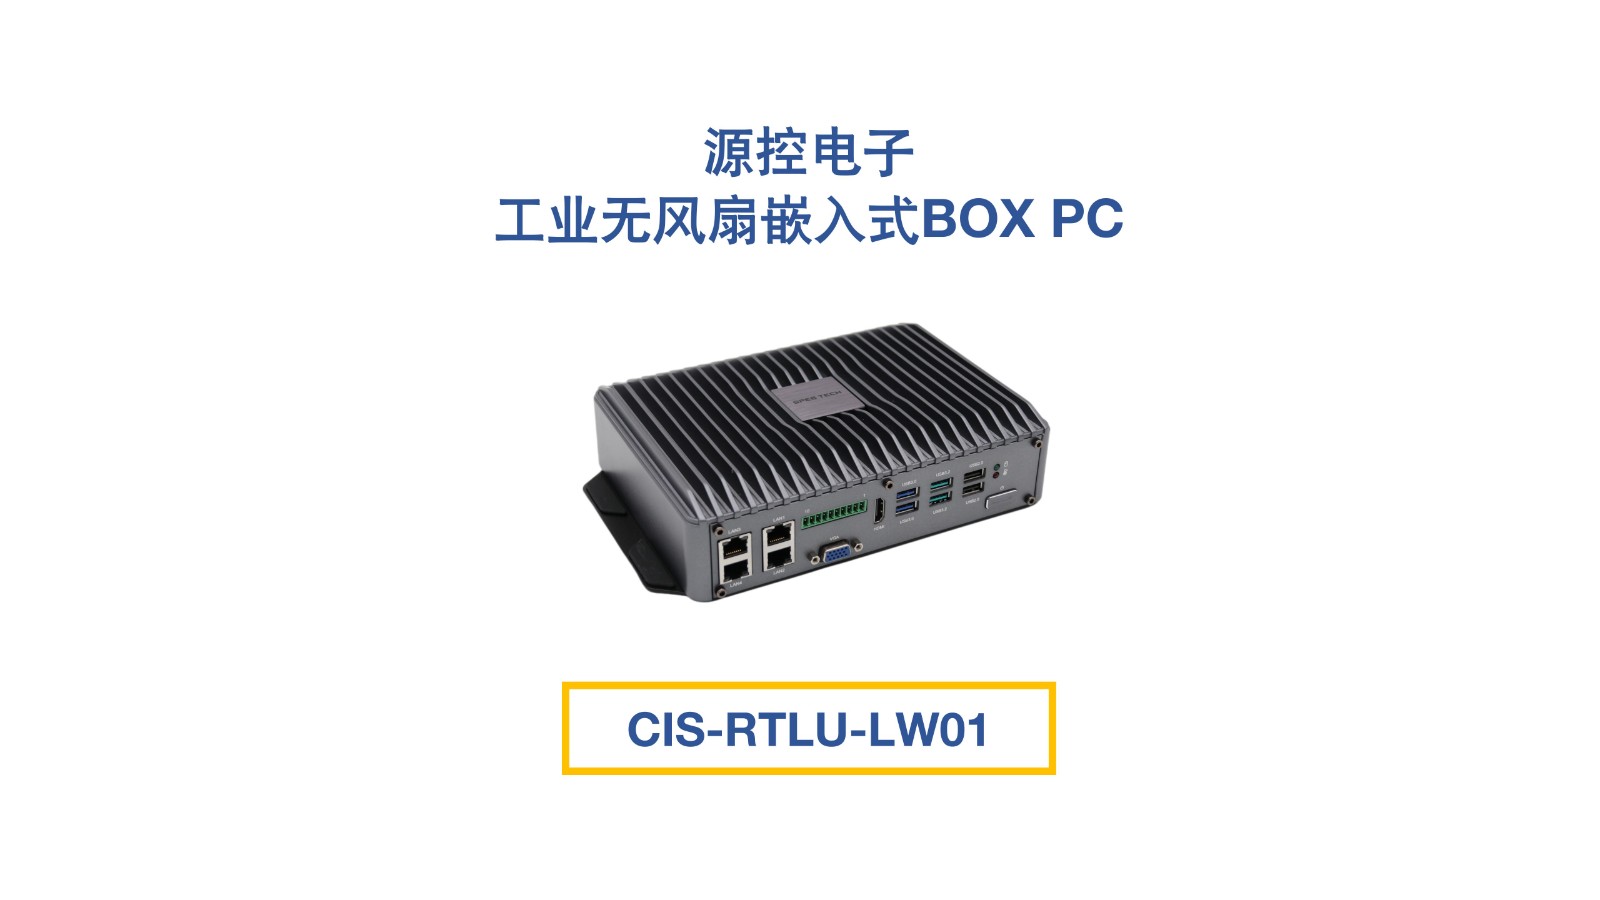 工业无风扇嵌入式BOX PC：CIS-RTLU-LW01